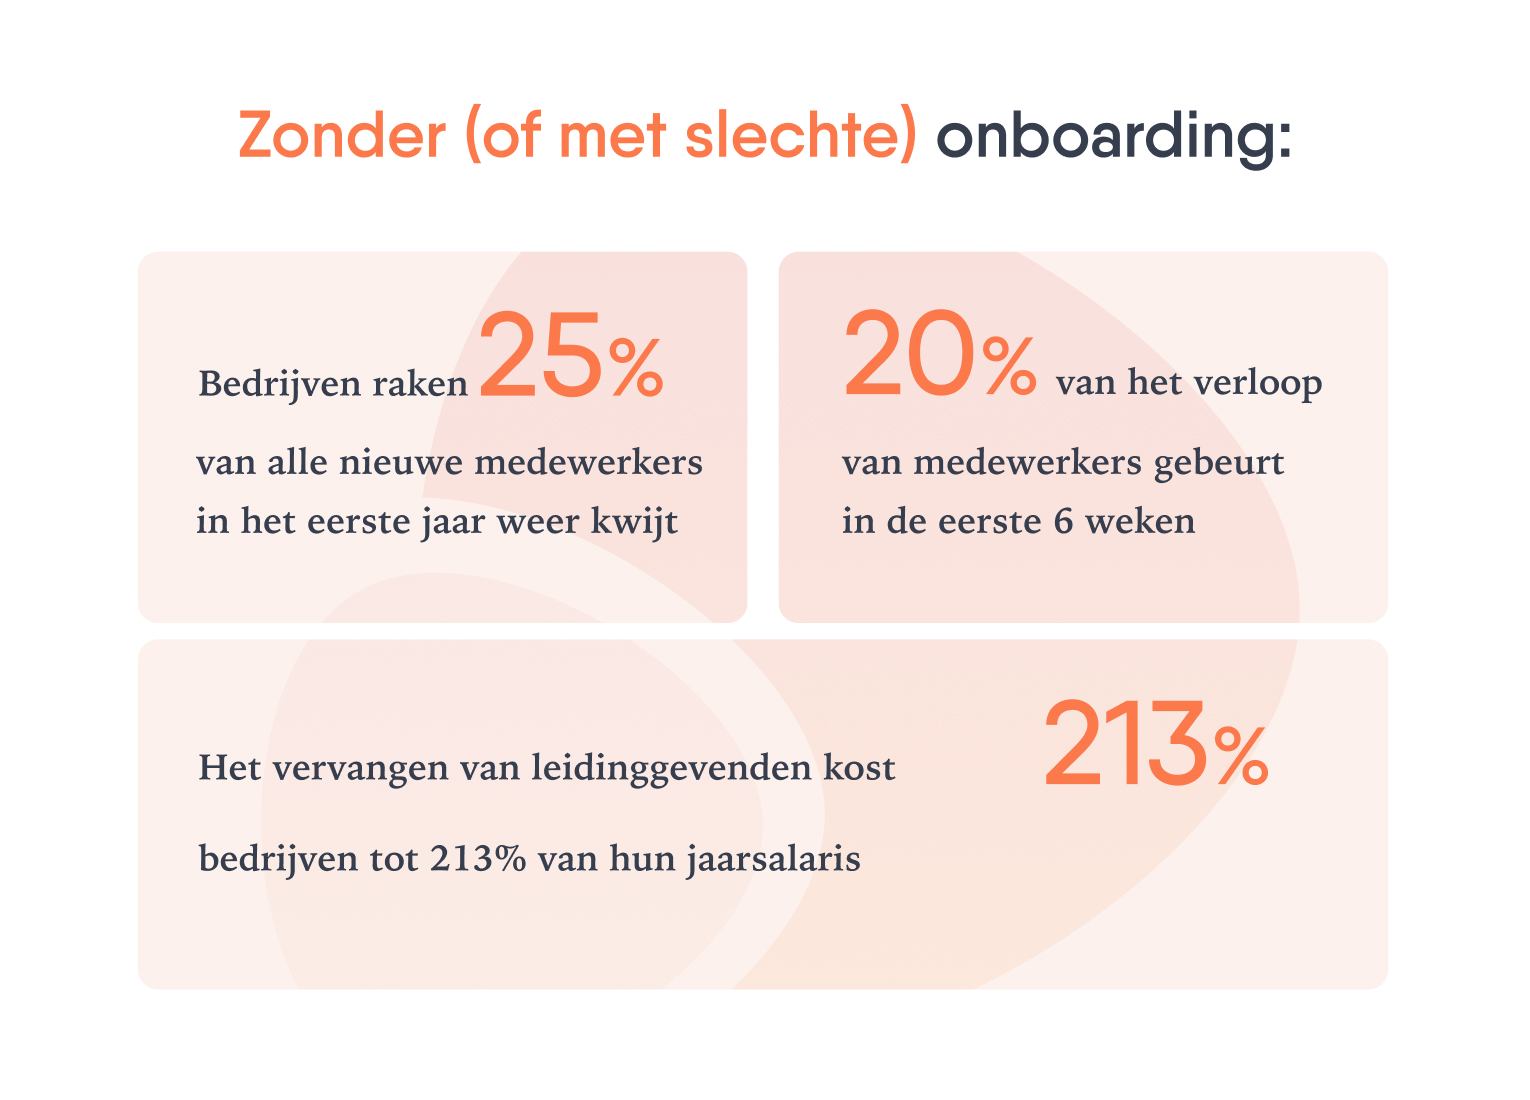 Drie oranjegekleurde vlakken met percentages en beschrijvingen over onboarding.